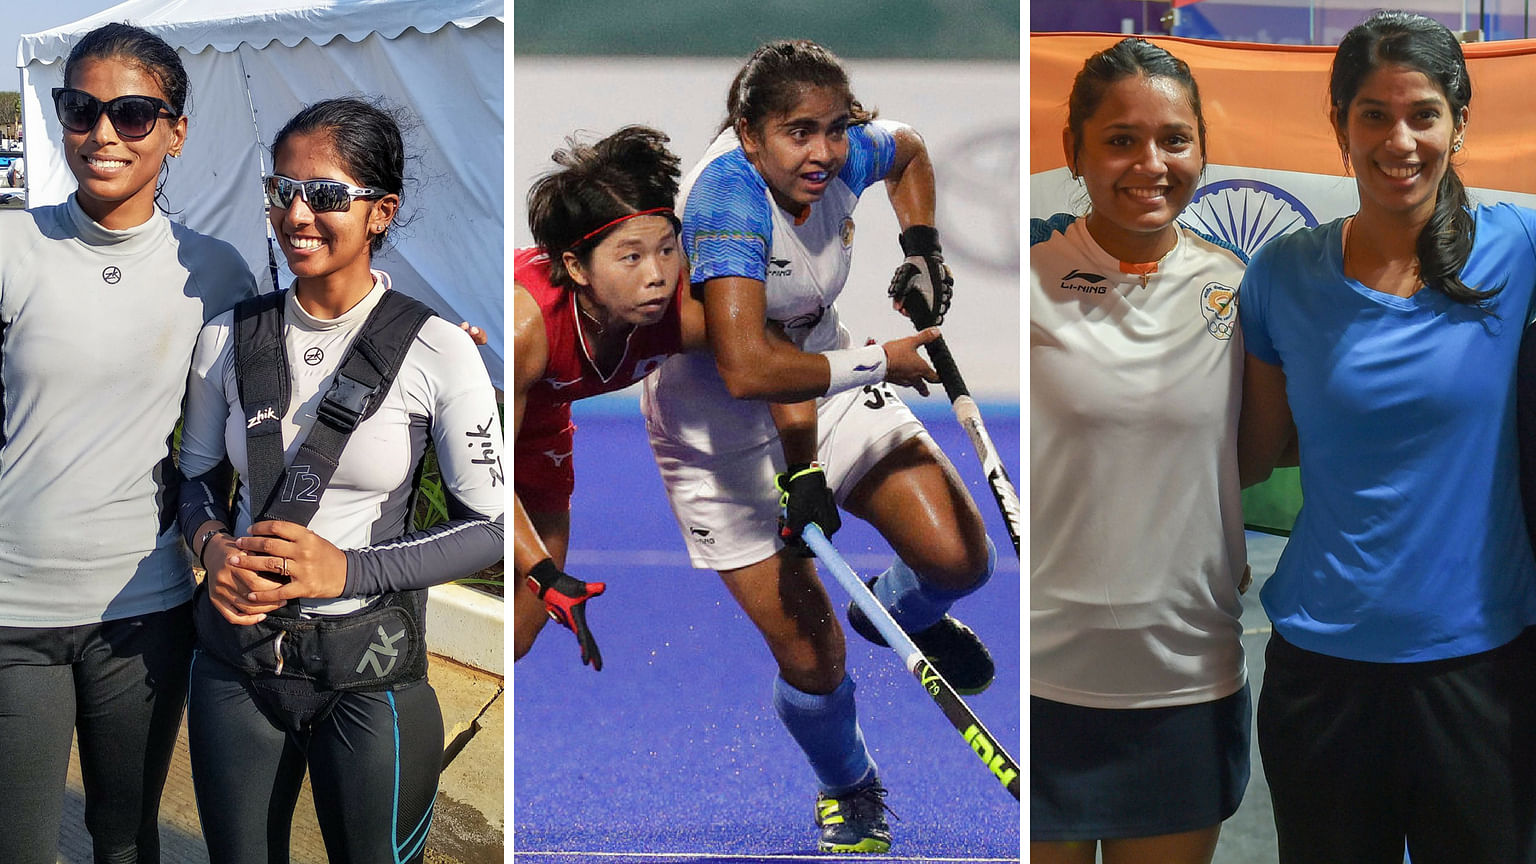 India’s silver medallists in sailing Varsha Gautham and Sweta Shervegar, hockey player Neha Goyal and squash players Dipika Pallikal and Joshna Chinappa.